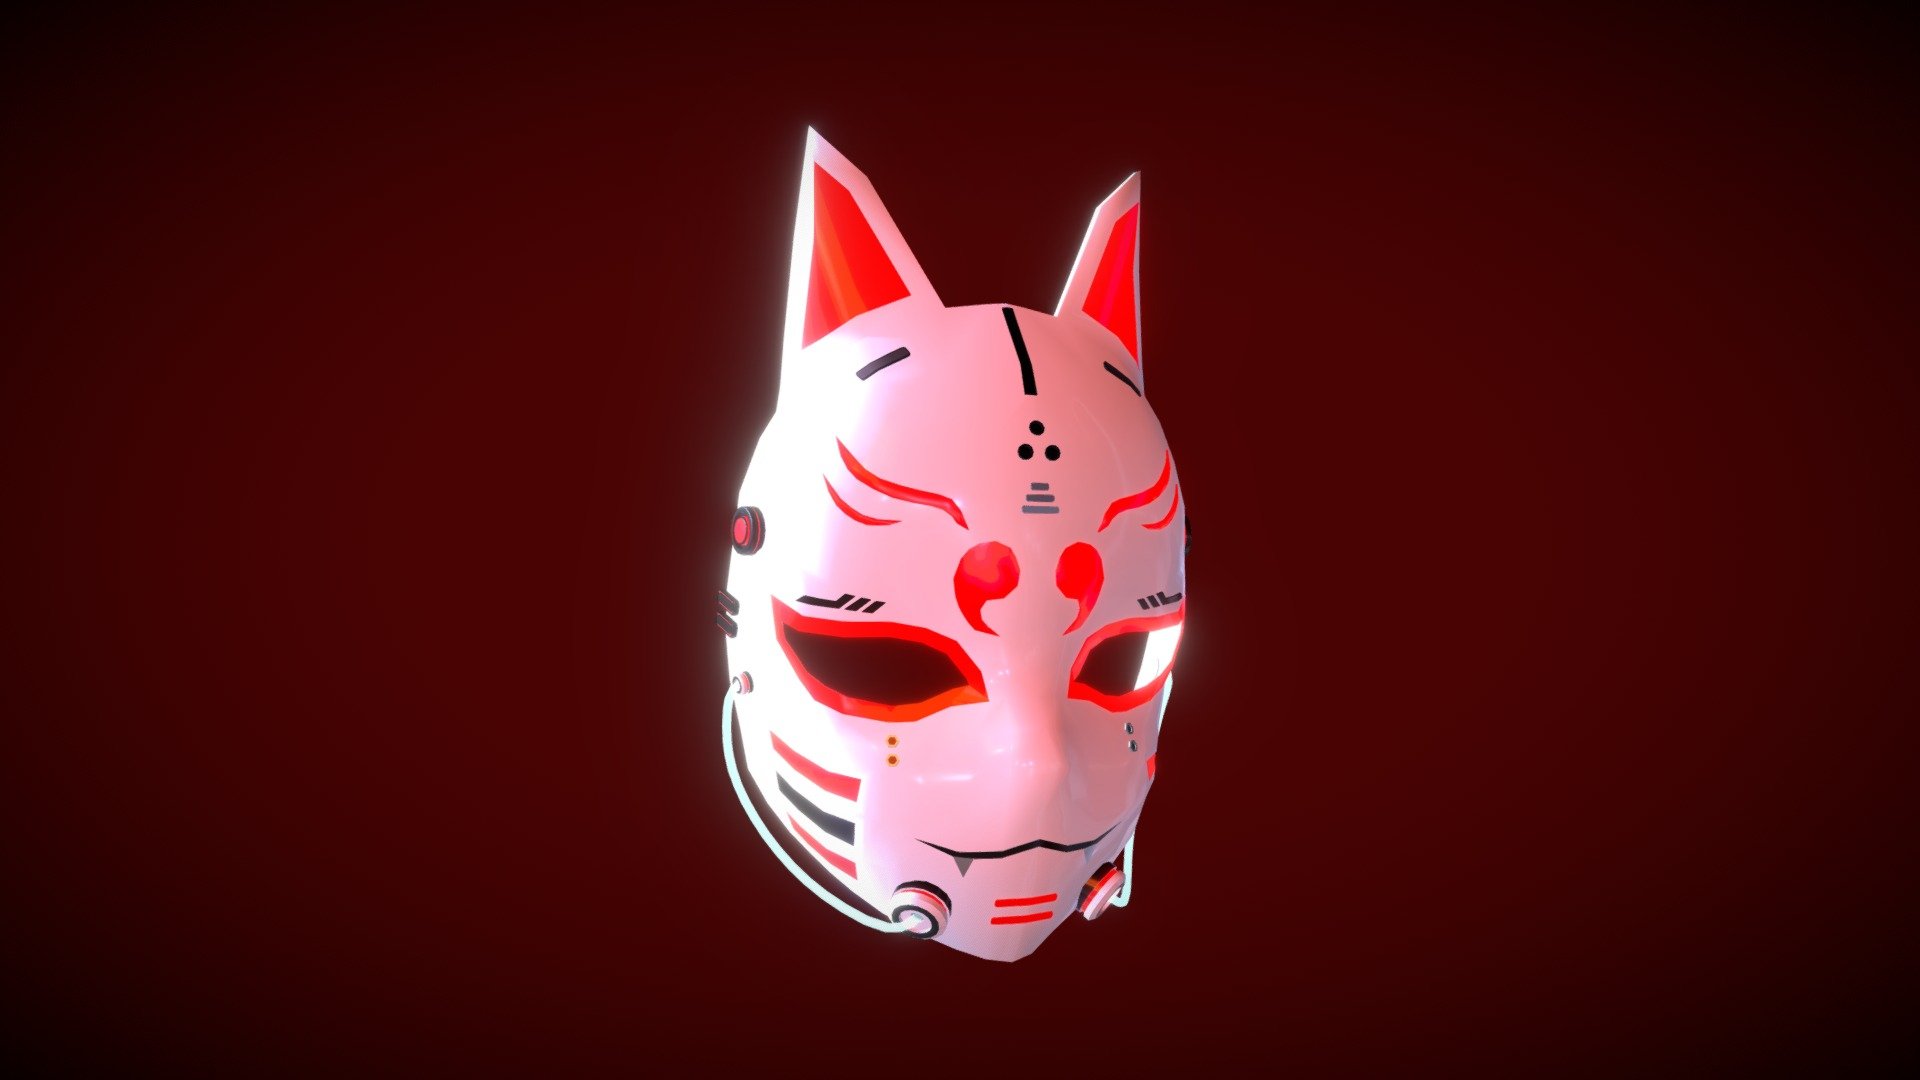 Cyberpunk Kitsune Mask - Buy Royalty Free 3D model by tran.ha.anh.thu.99  (@tran.ha.anh.thu.99) [813b5f9]